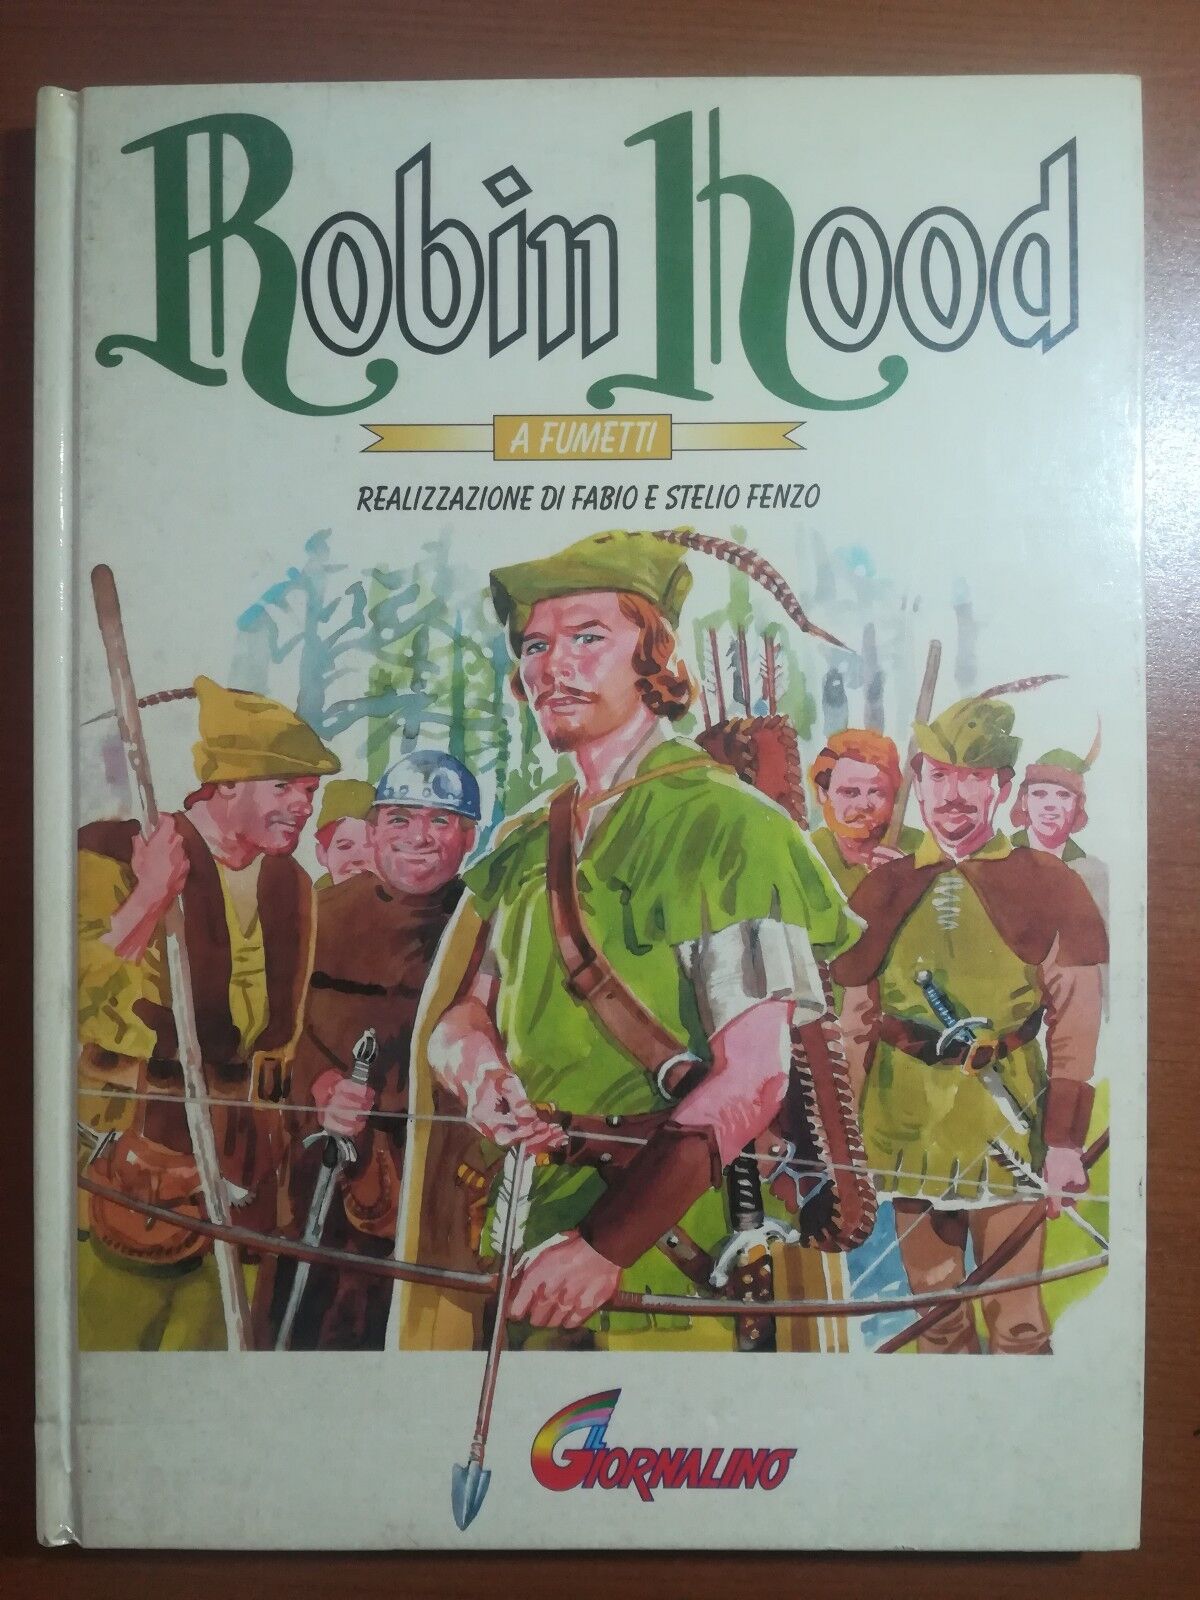 Robin Hood - Fabio e Stelio Fenzo - Il giornalino - 1995 - M